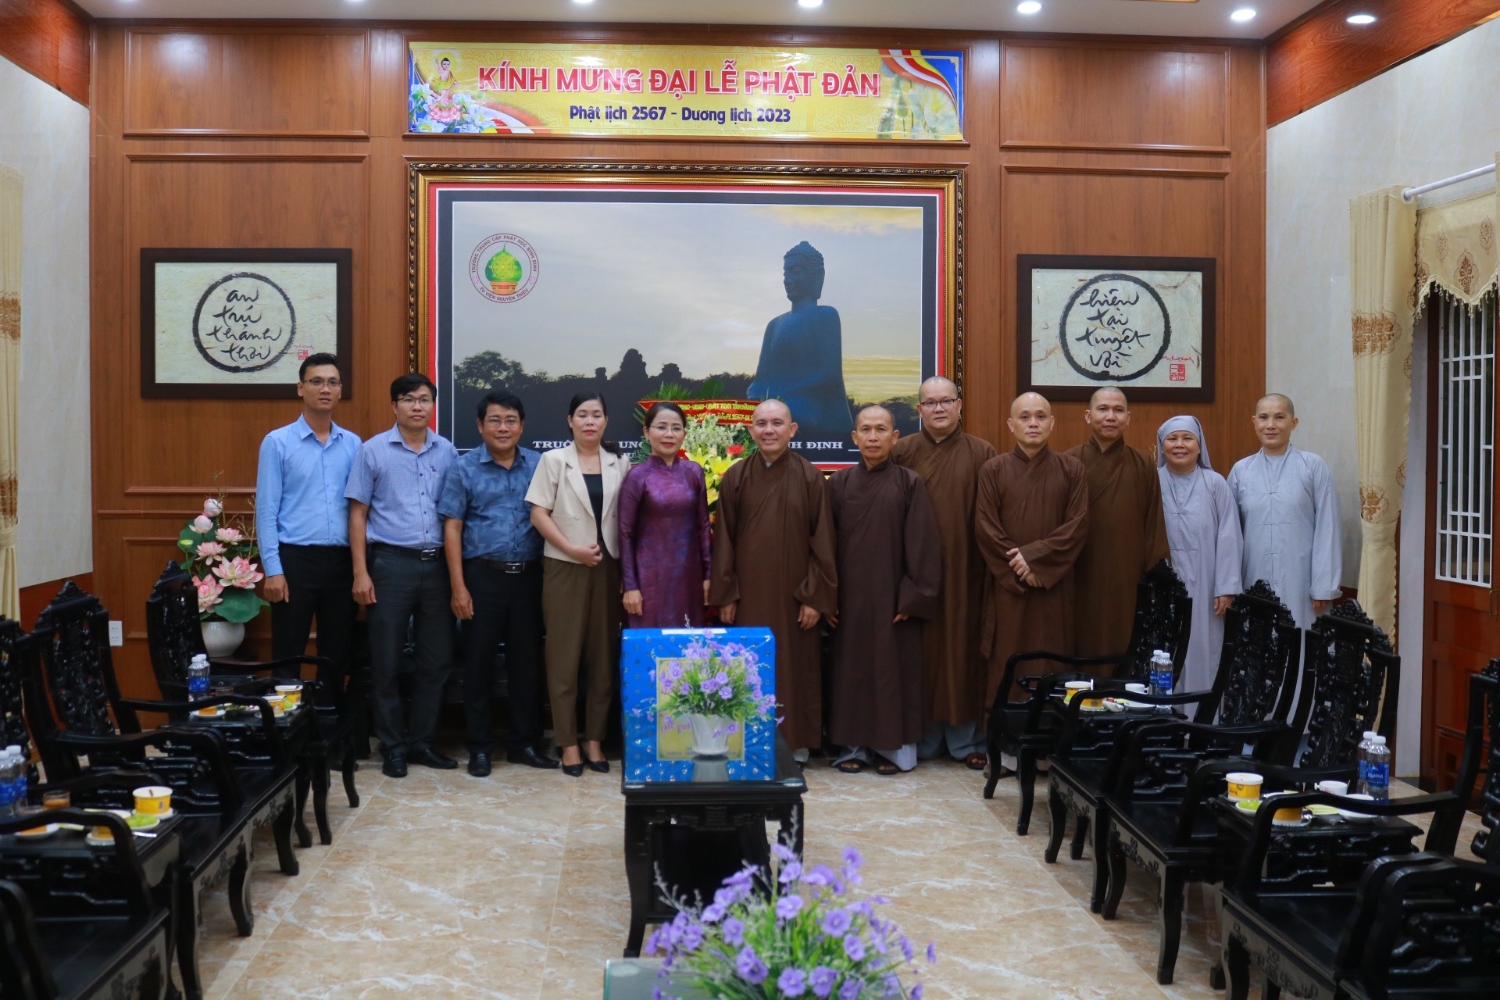 Đoàn lãnh đạo Tỉnh uỷ Bình Định, Huyện uỷ và Công an huyện Tuy Phước đến thăm Trường Trung cấp Phật học Bình Định nhân dịp Đại lễ Phật đản PL.2567